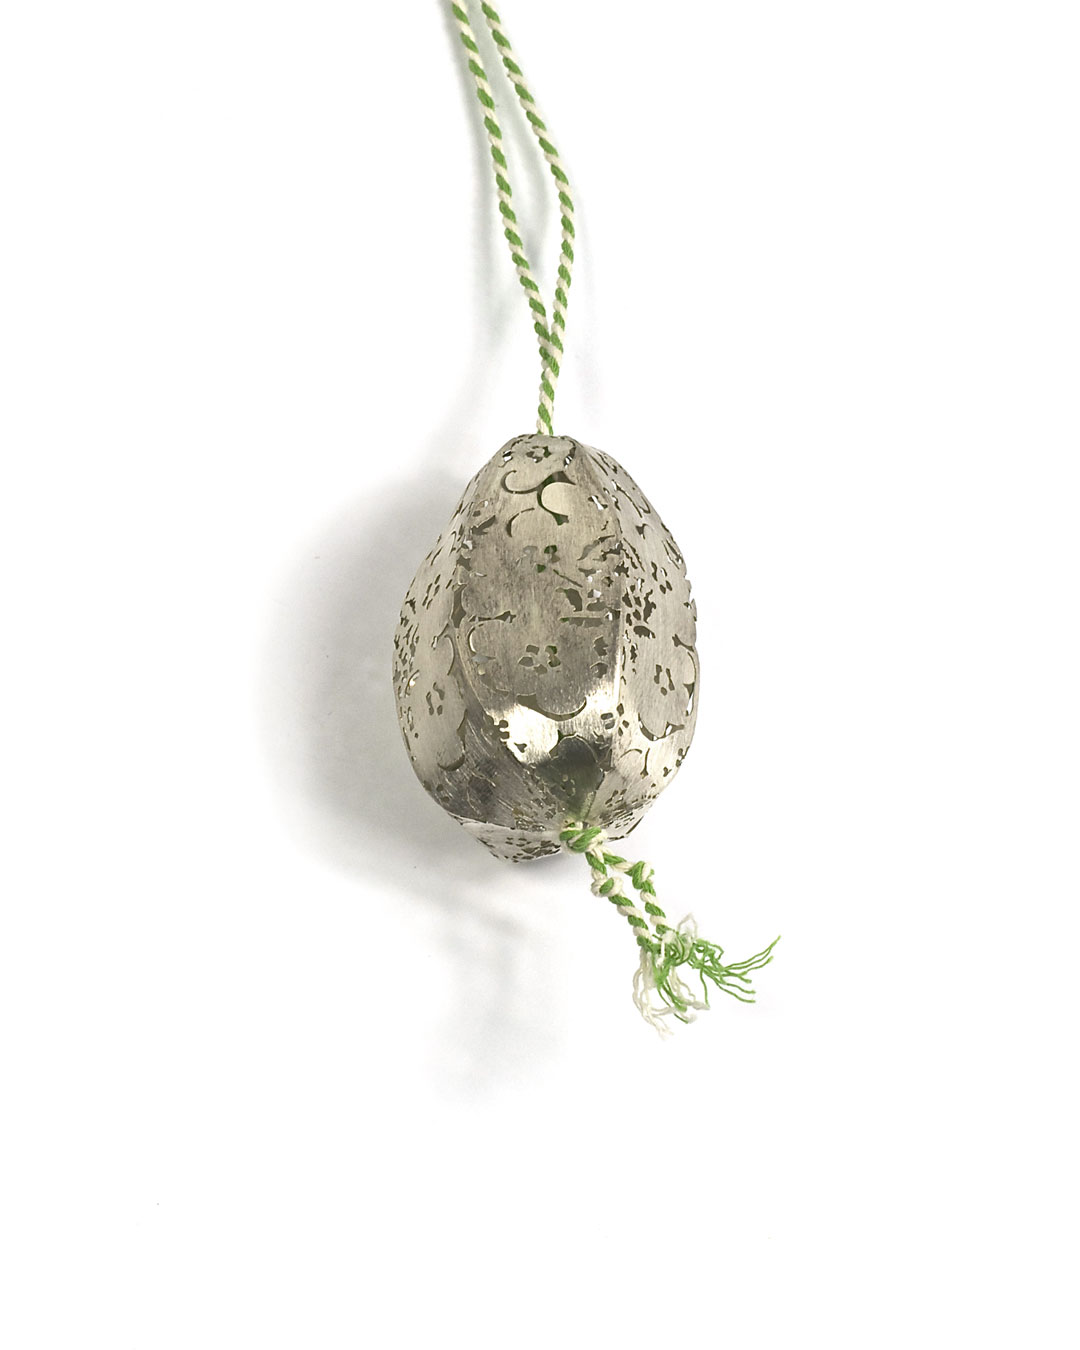 Carla Nuis, Potato, 2010, pendant; silver, cotton, various sizes, €560